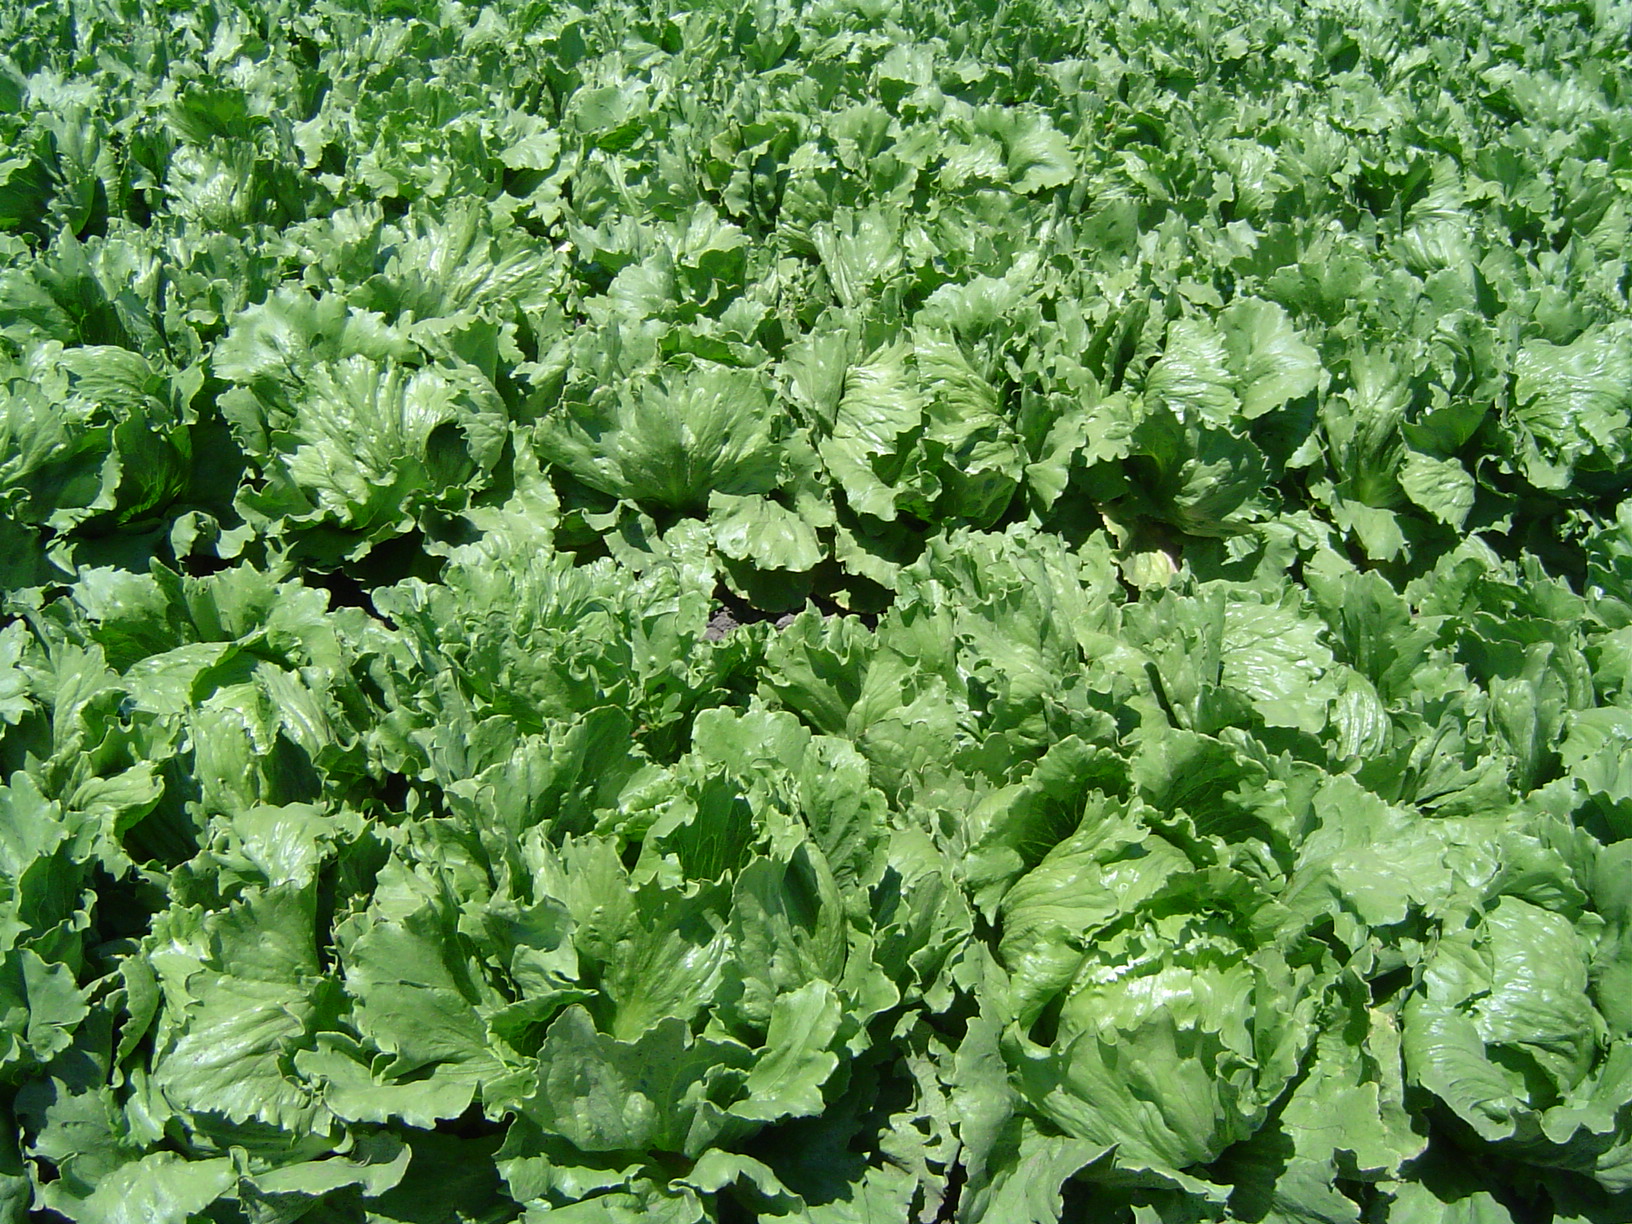 https://upload.wikimedia.org/wikipedia/commons/d/da/Iceberg_lettuce_in_SB.jpg